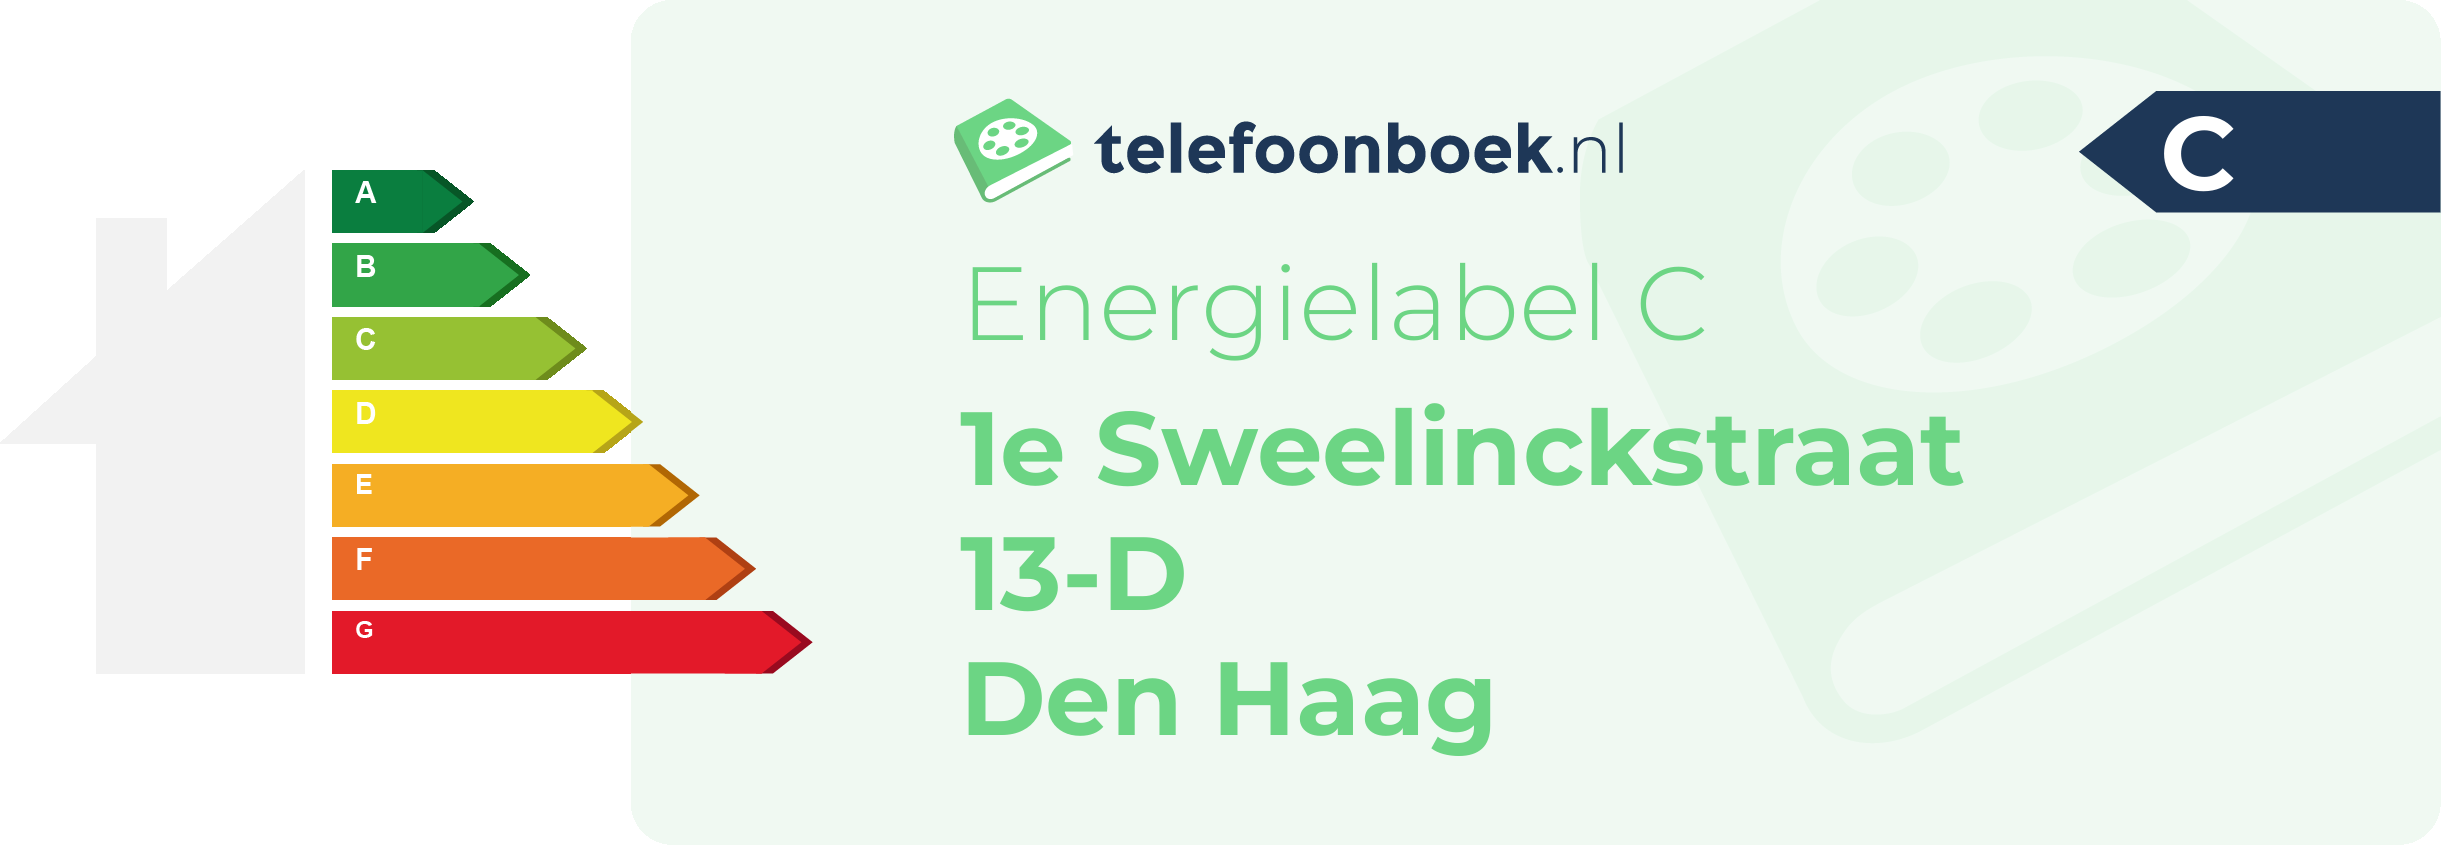 Energielabel 1e Sweelinckstraat 13-D Den Haag